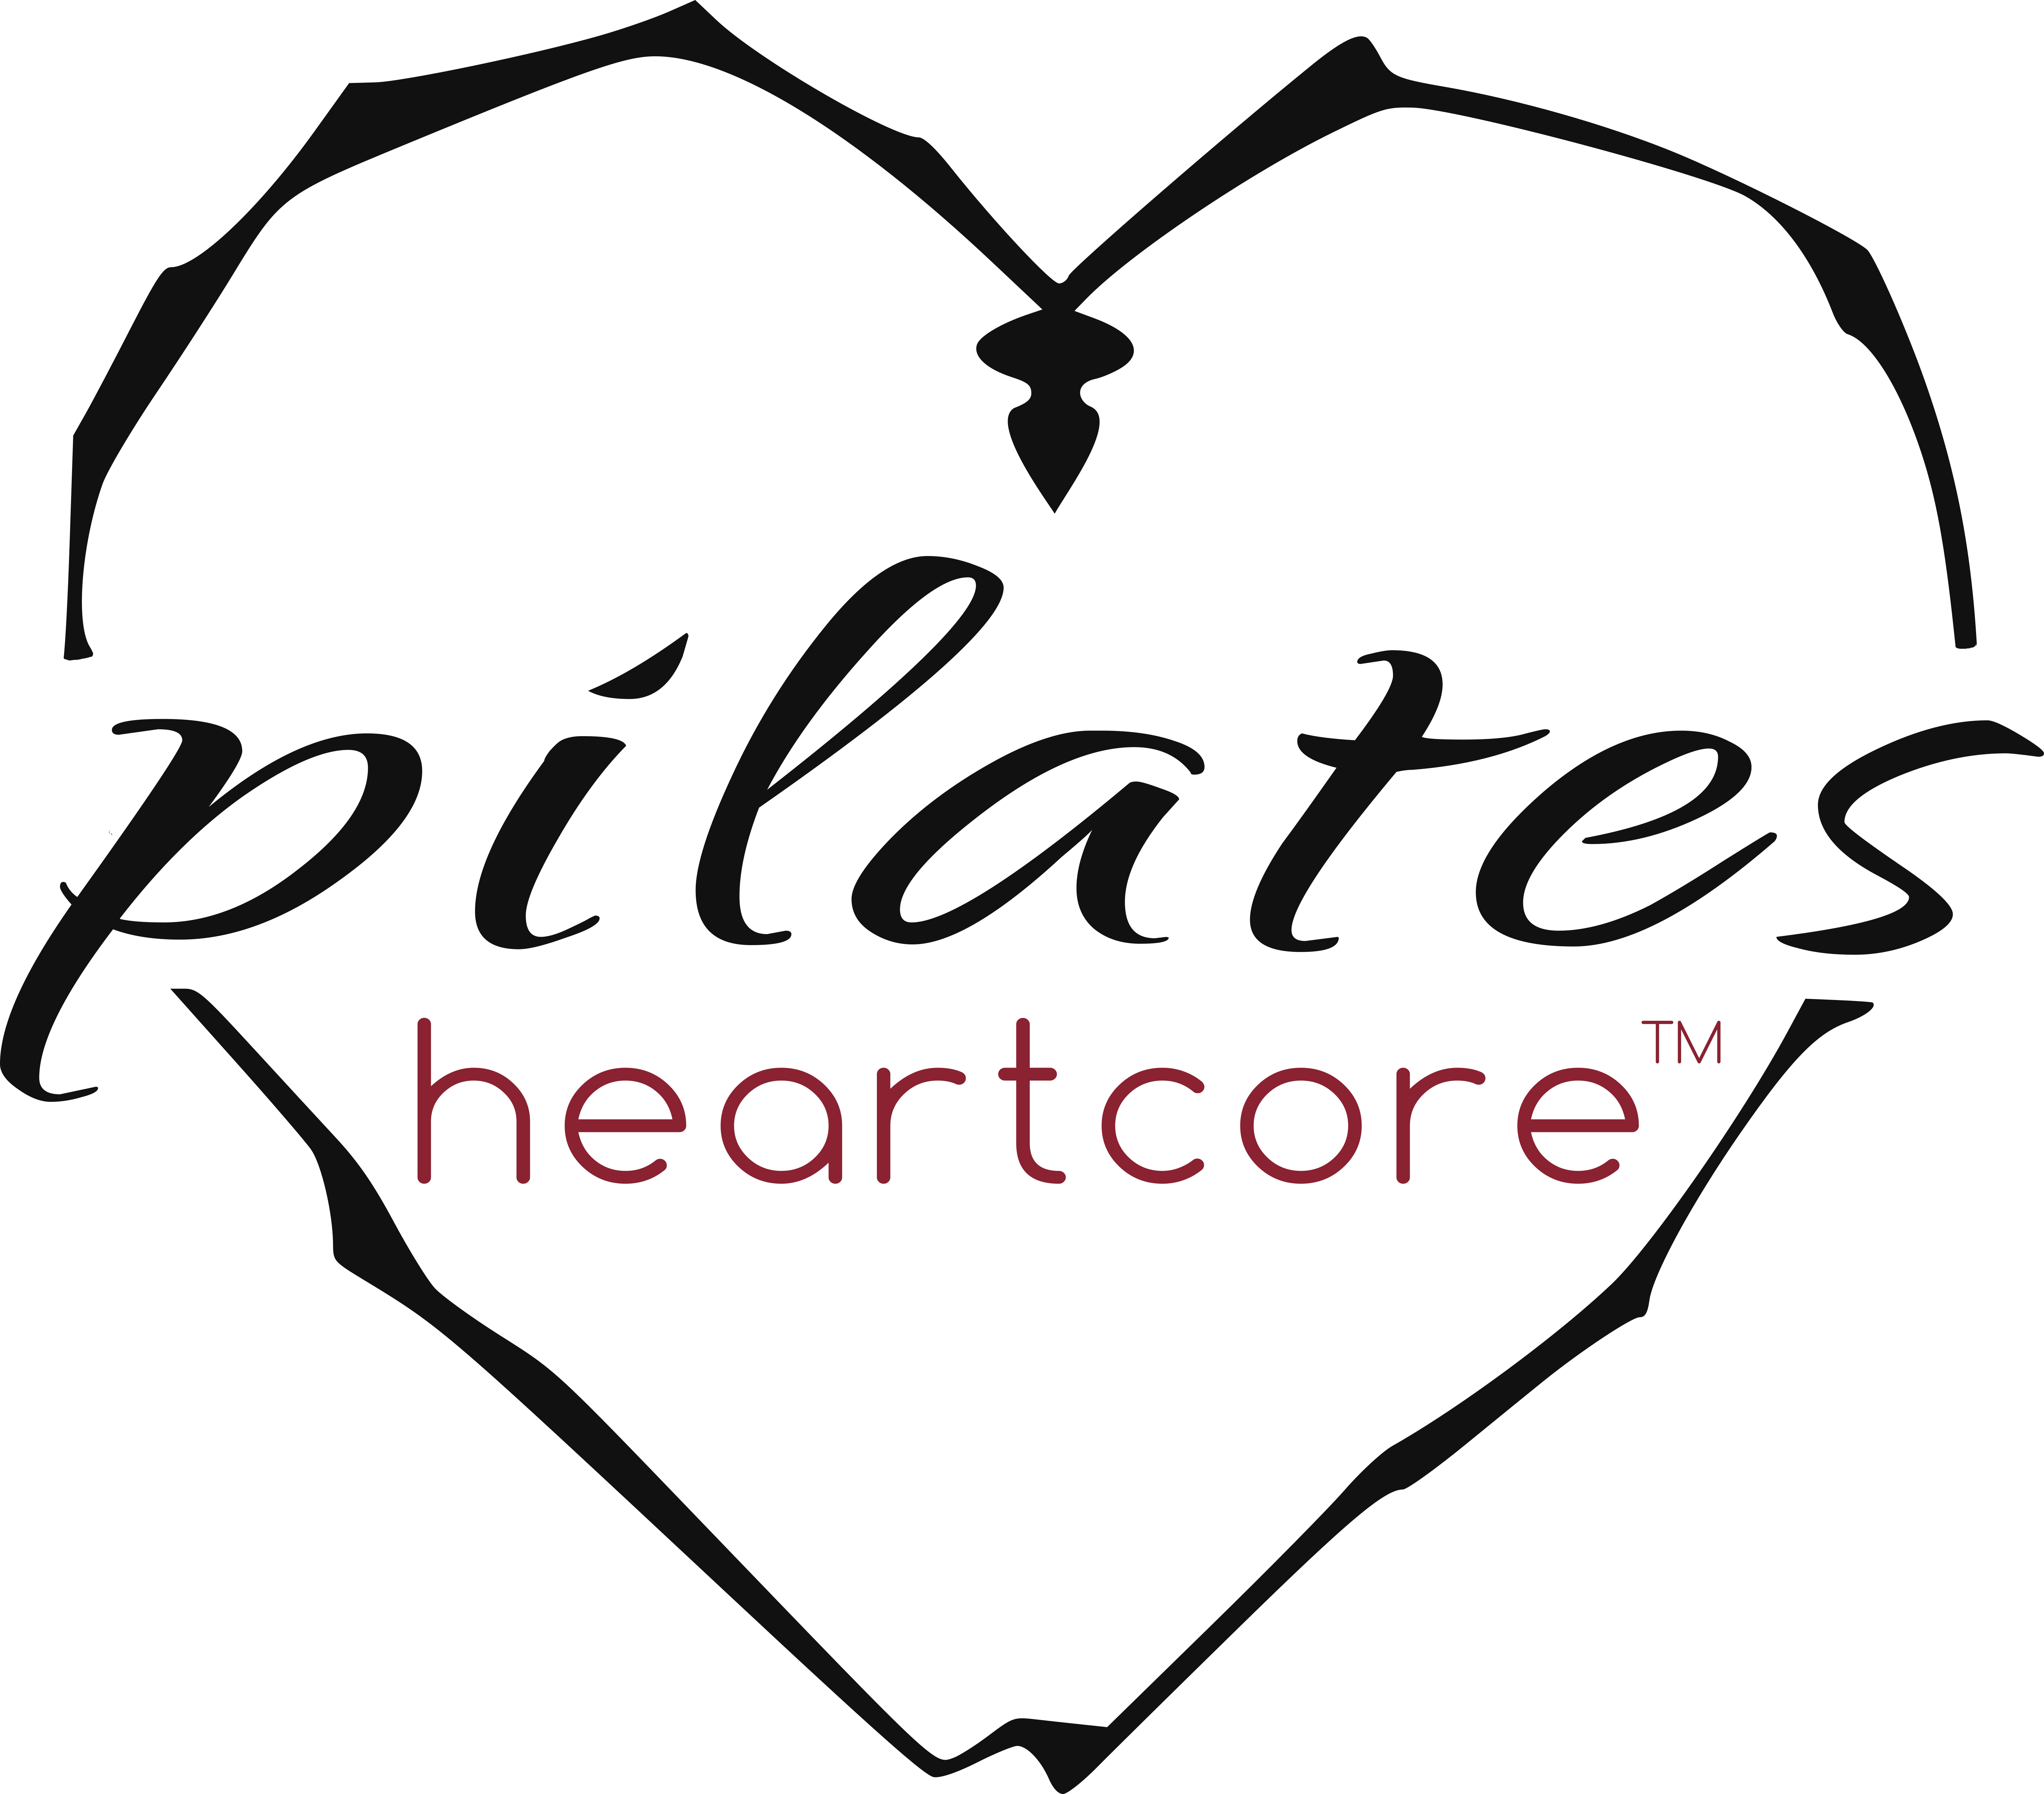 Pilates Heartcore - Pilates Heartcore (5840x5127)